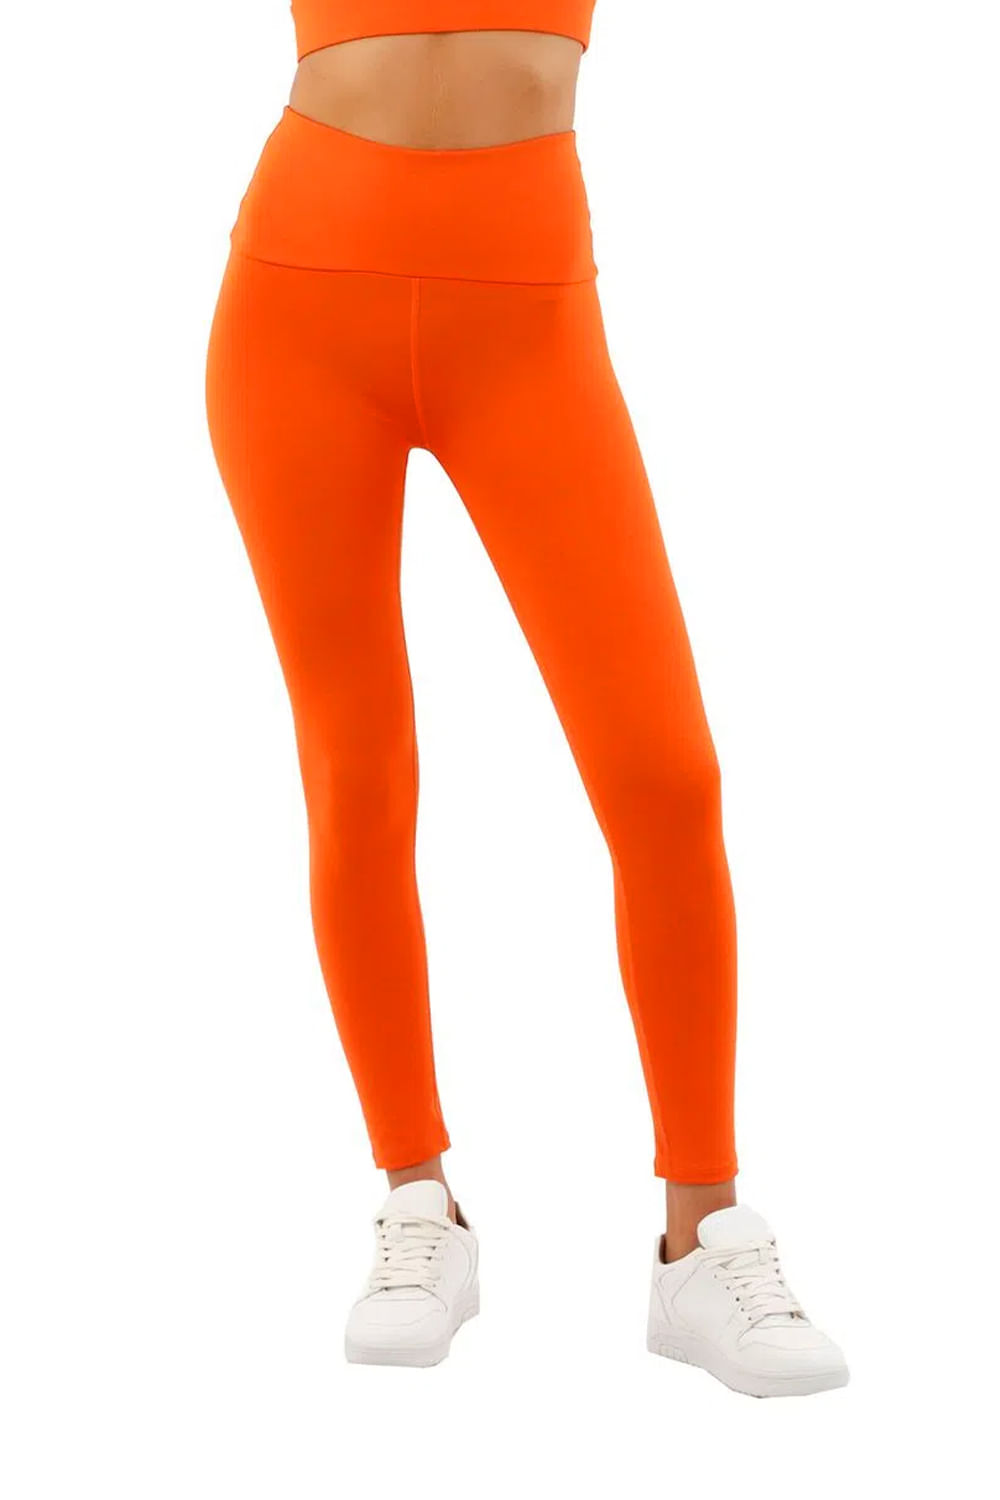 Pantalon Naranja para mujer Hydra - Mercedes Campuzano